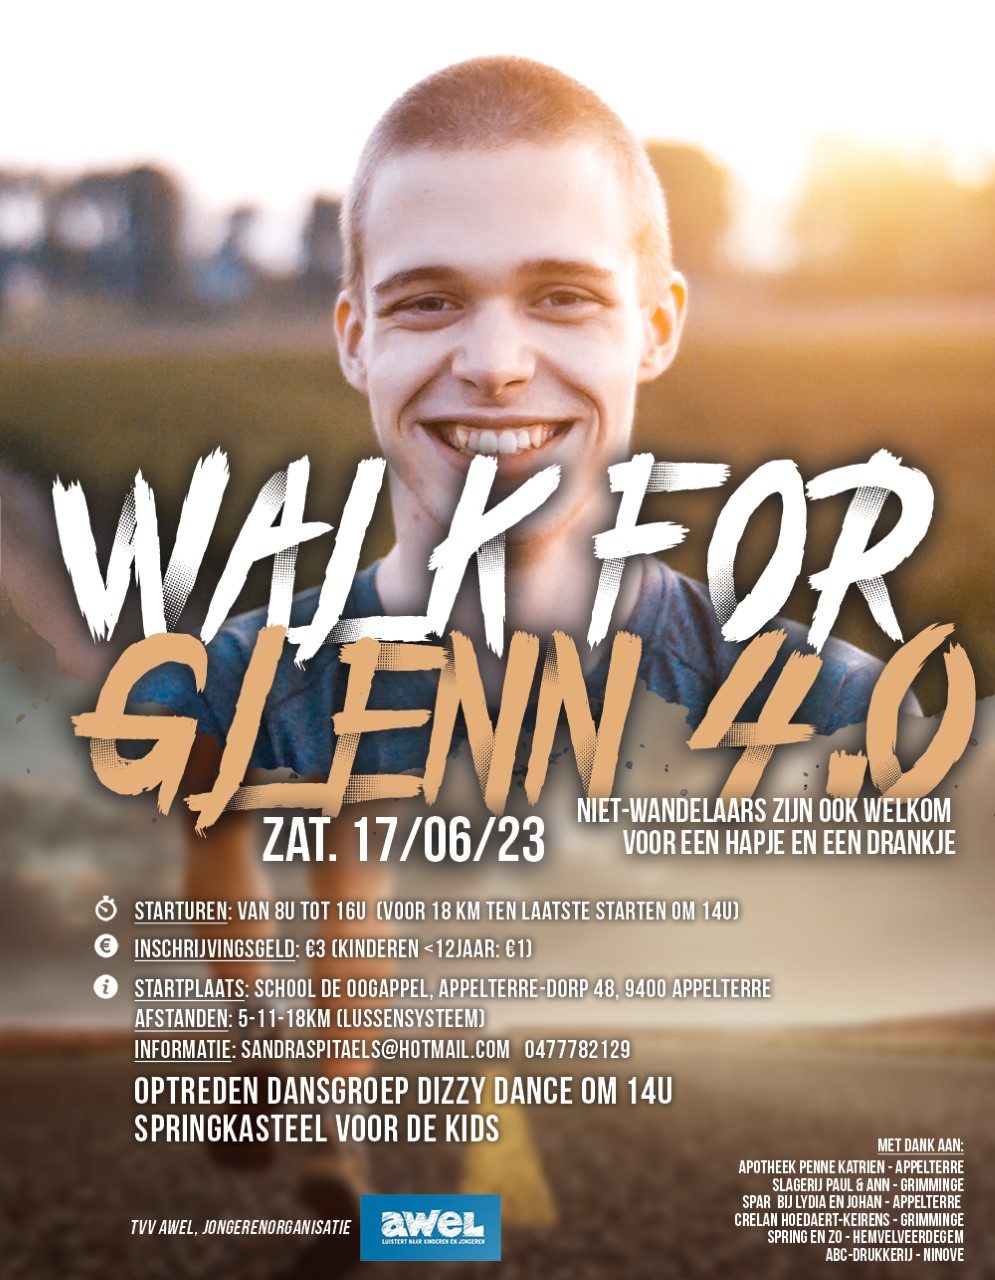 Walk for Glenn 4.0